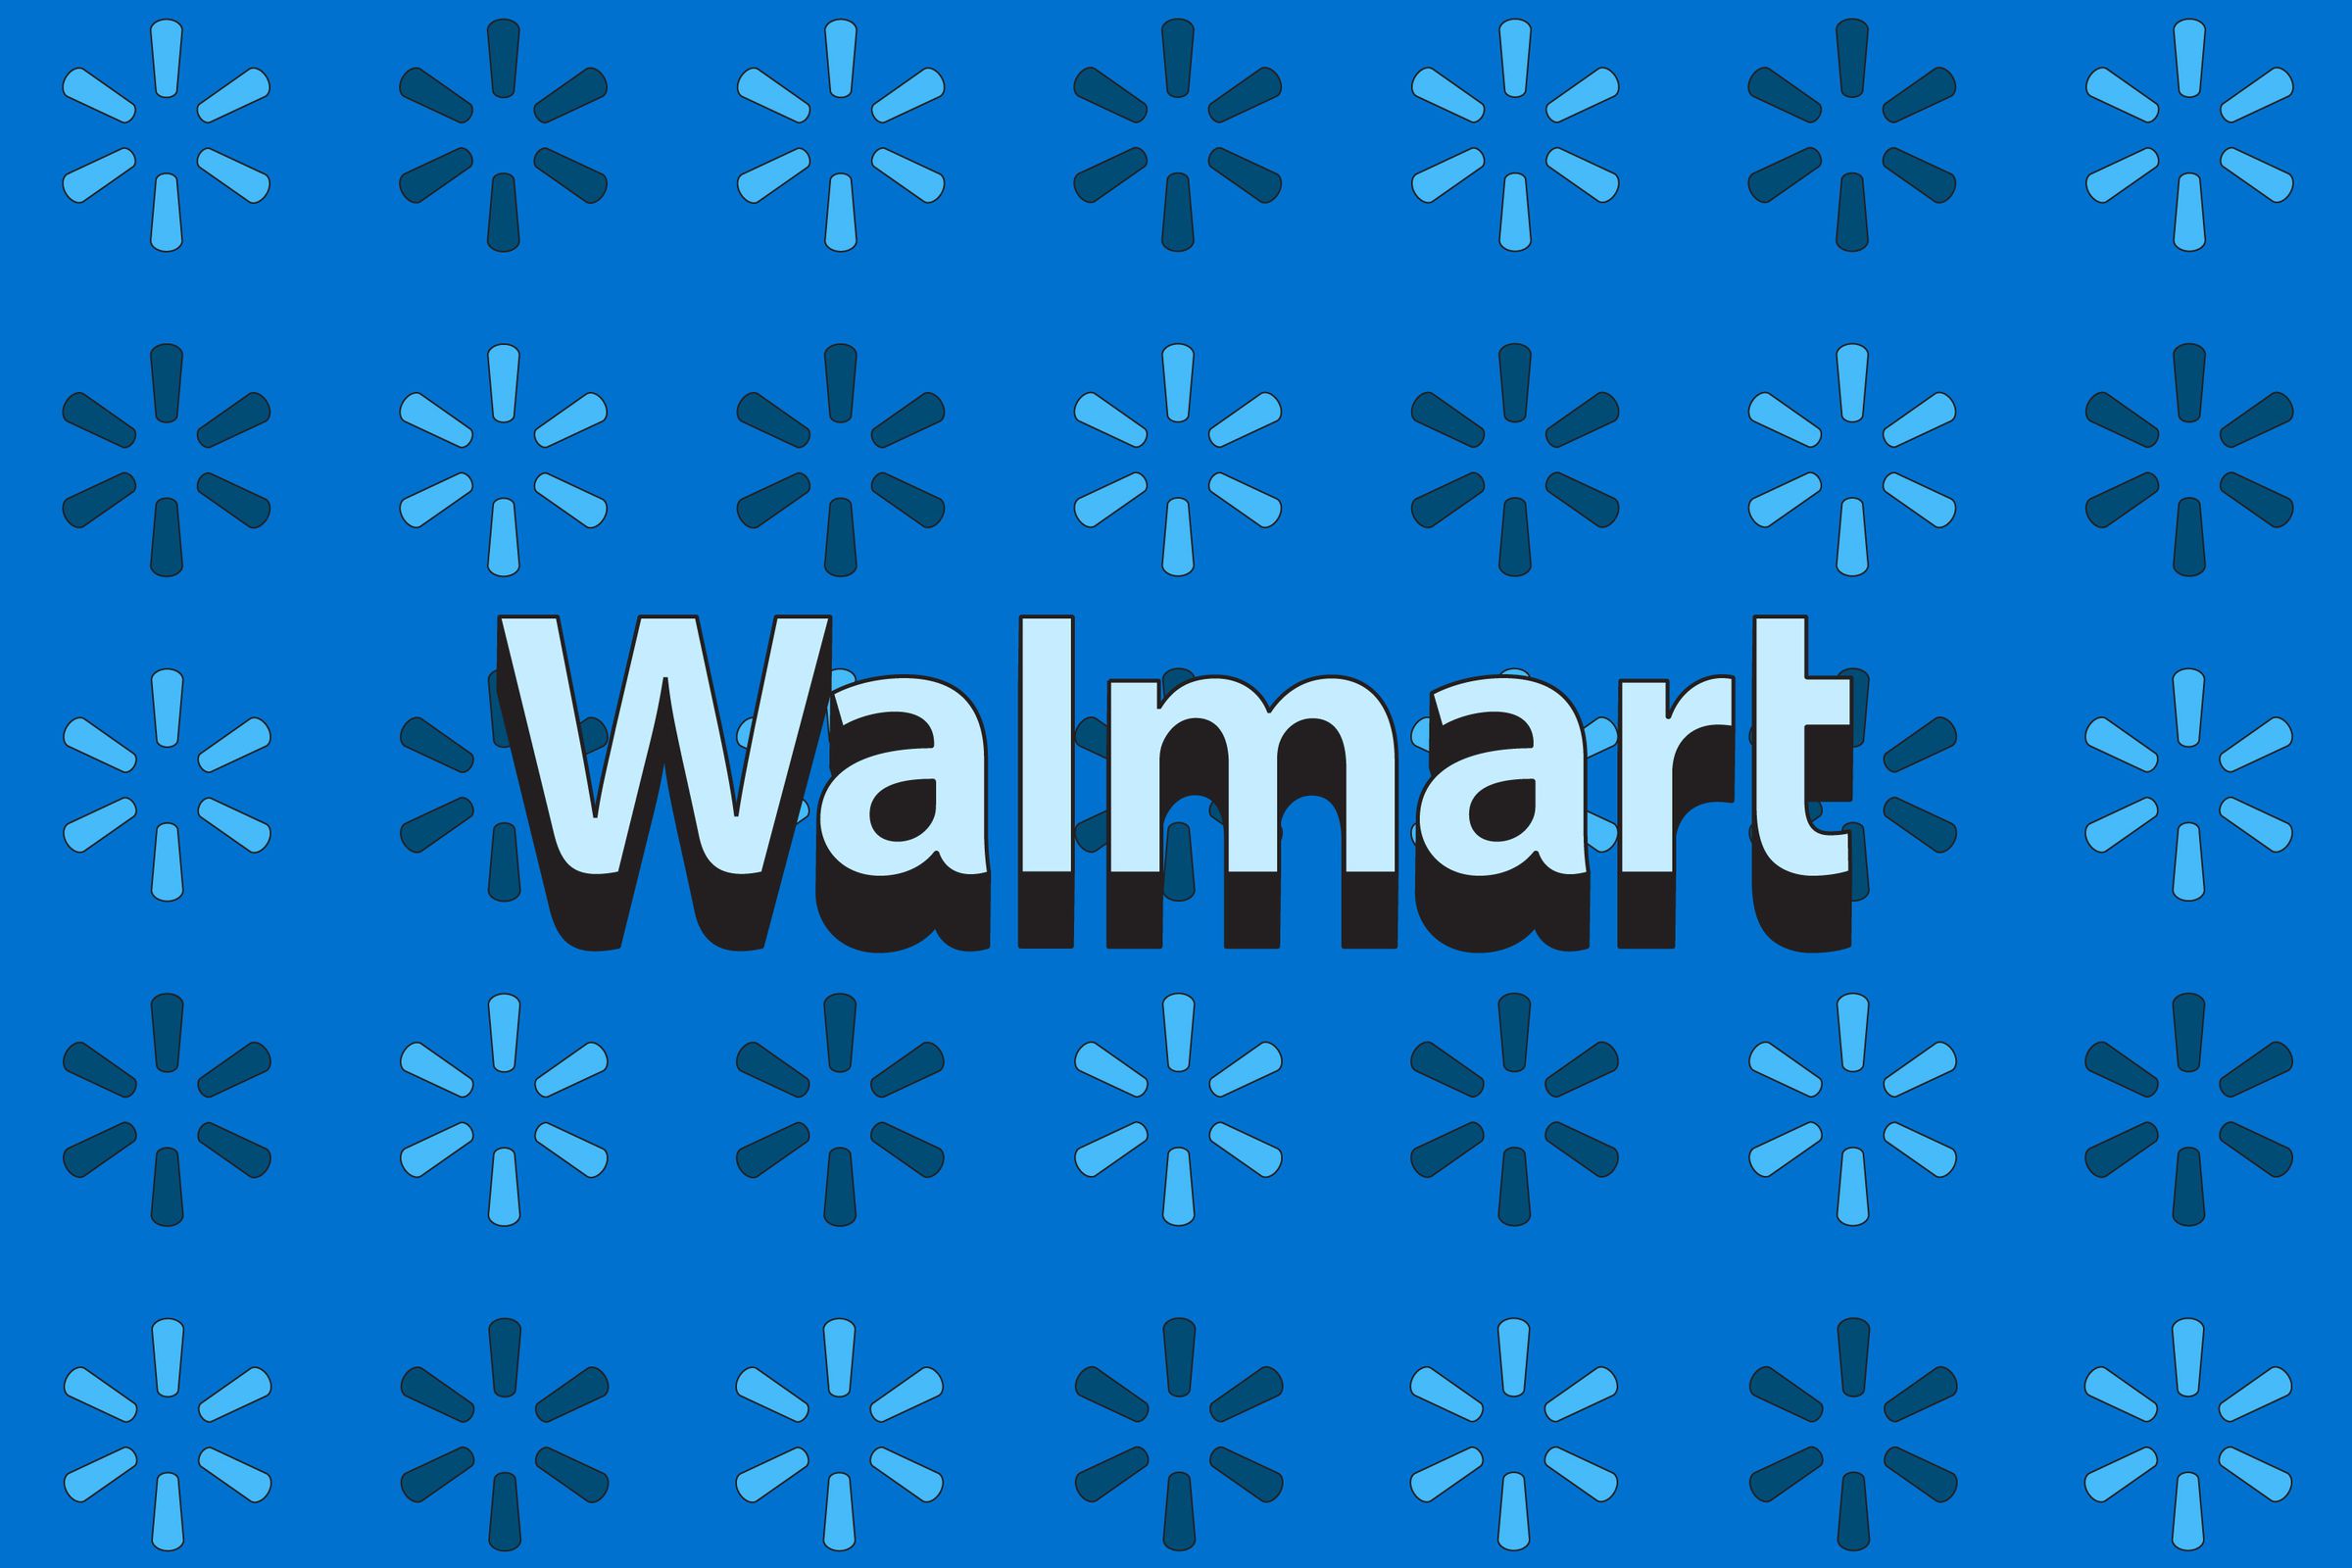 Walmart logosunun bir stok fotoğrafı